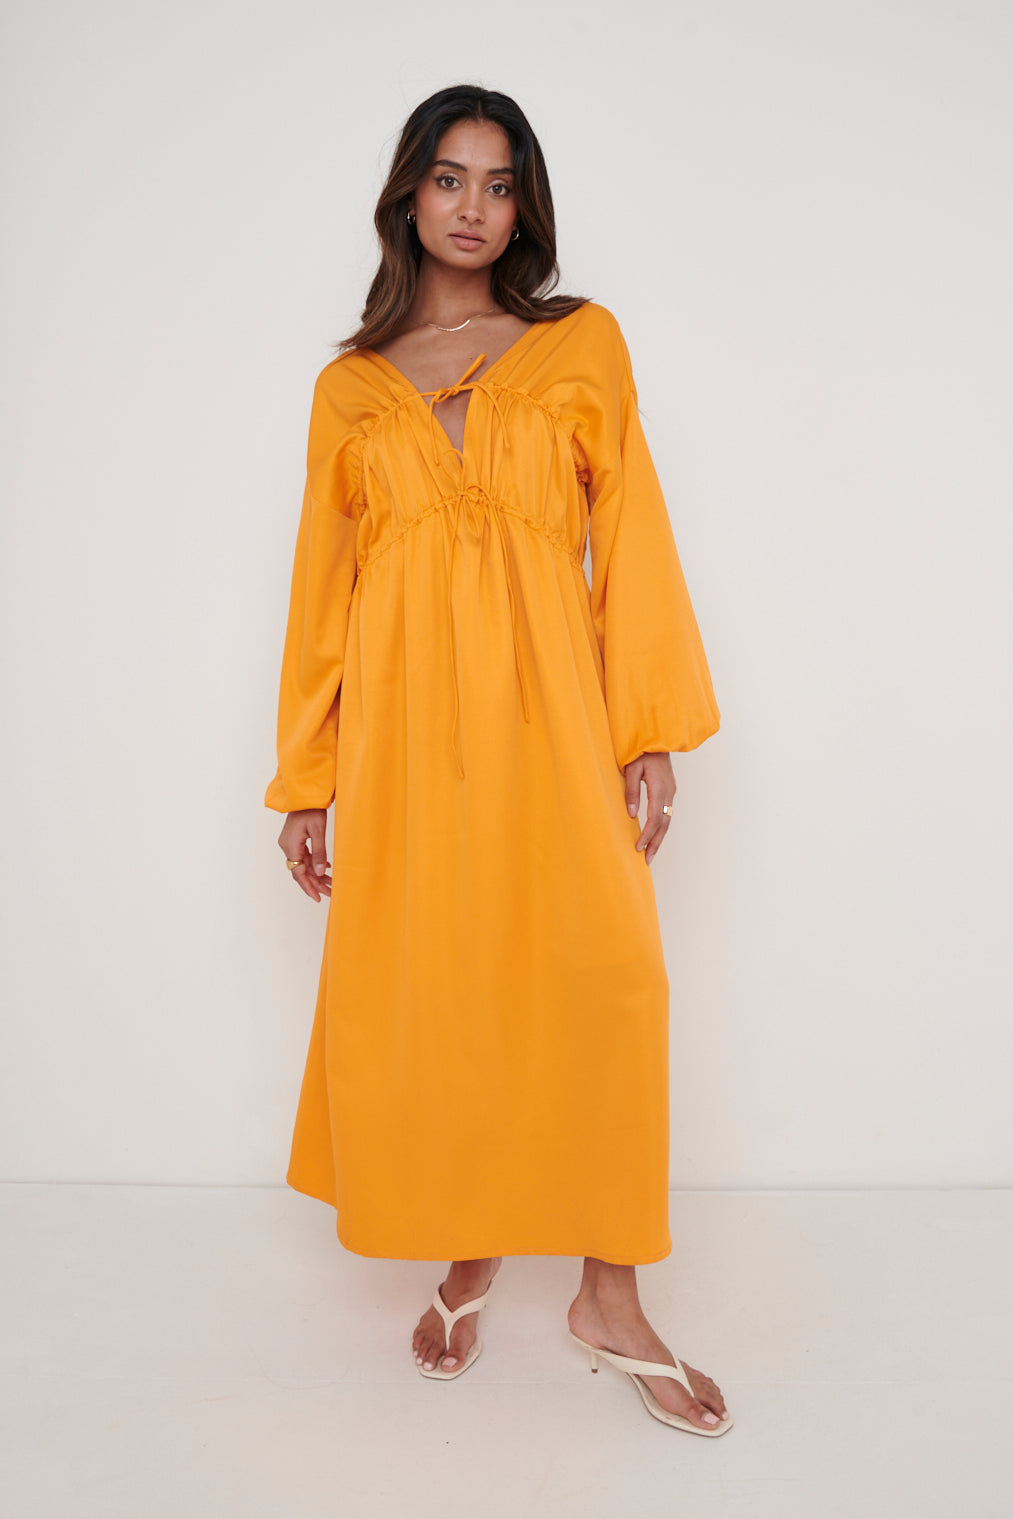 Ottilie Tie Midaxi Dress - Tangerine, 10